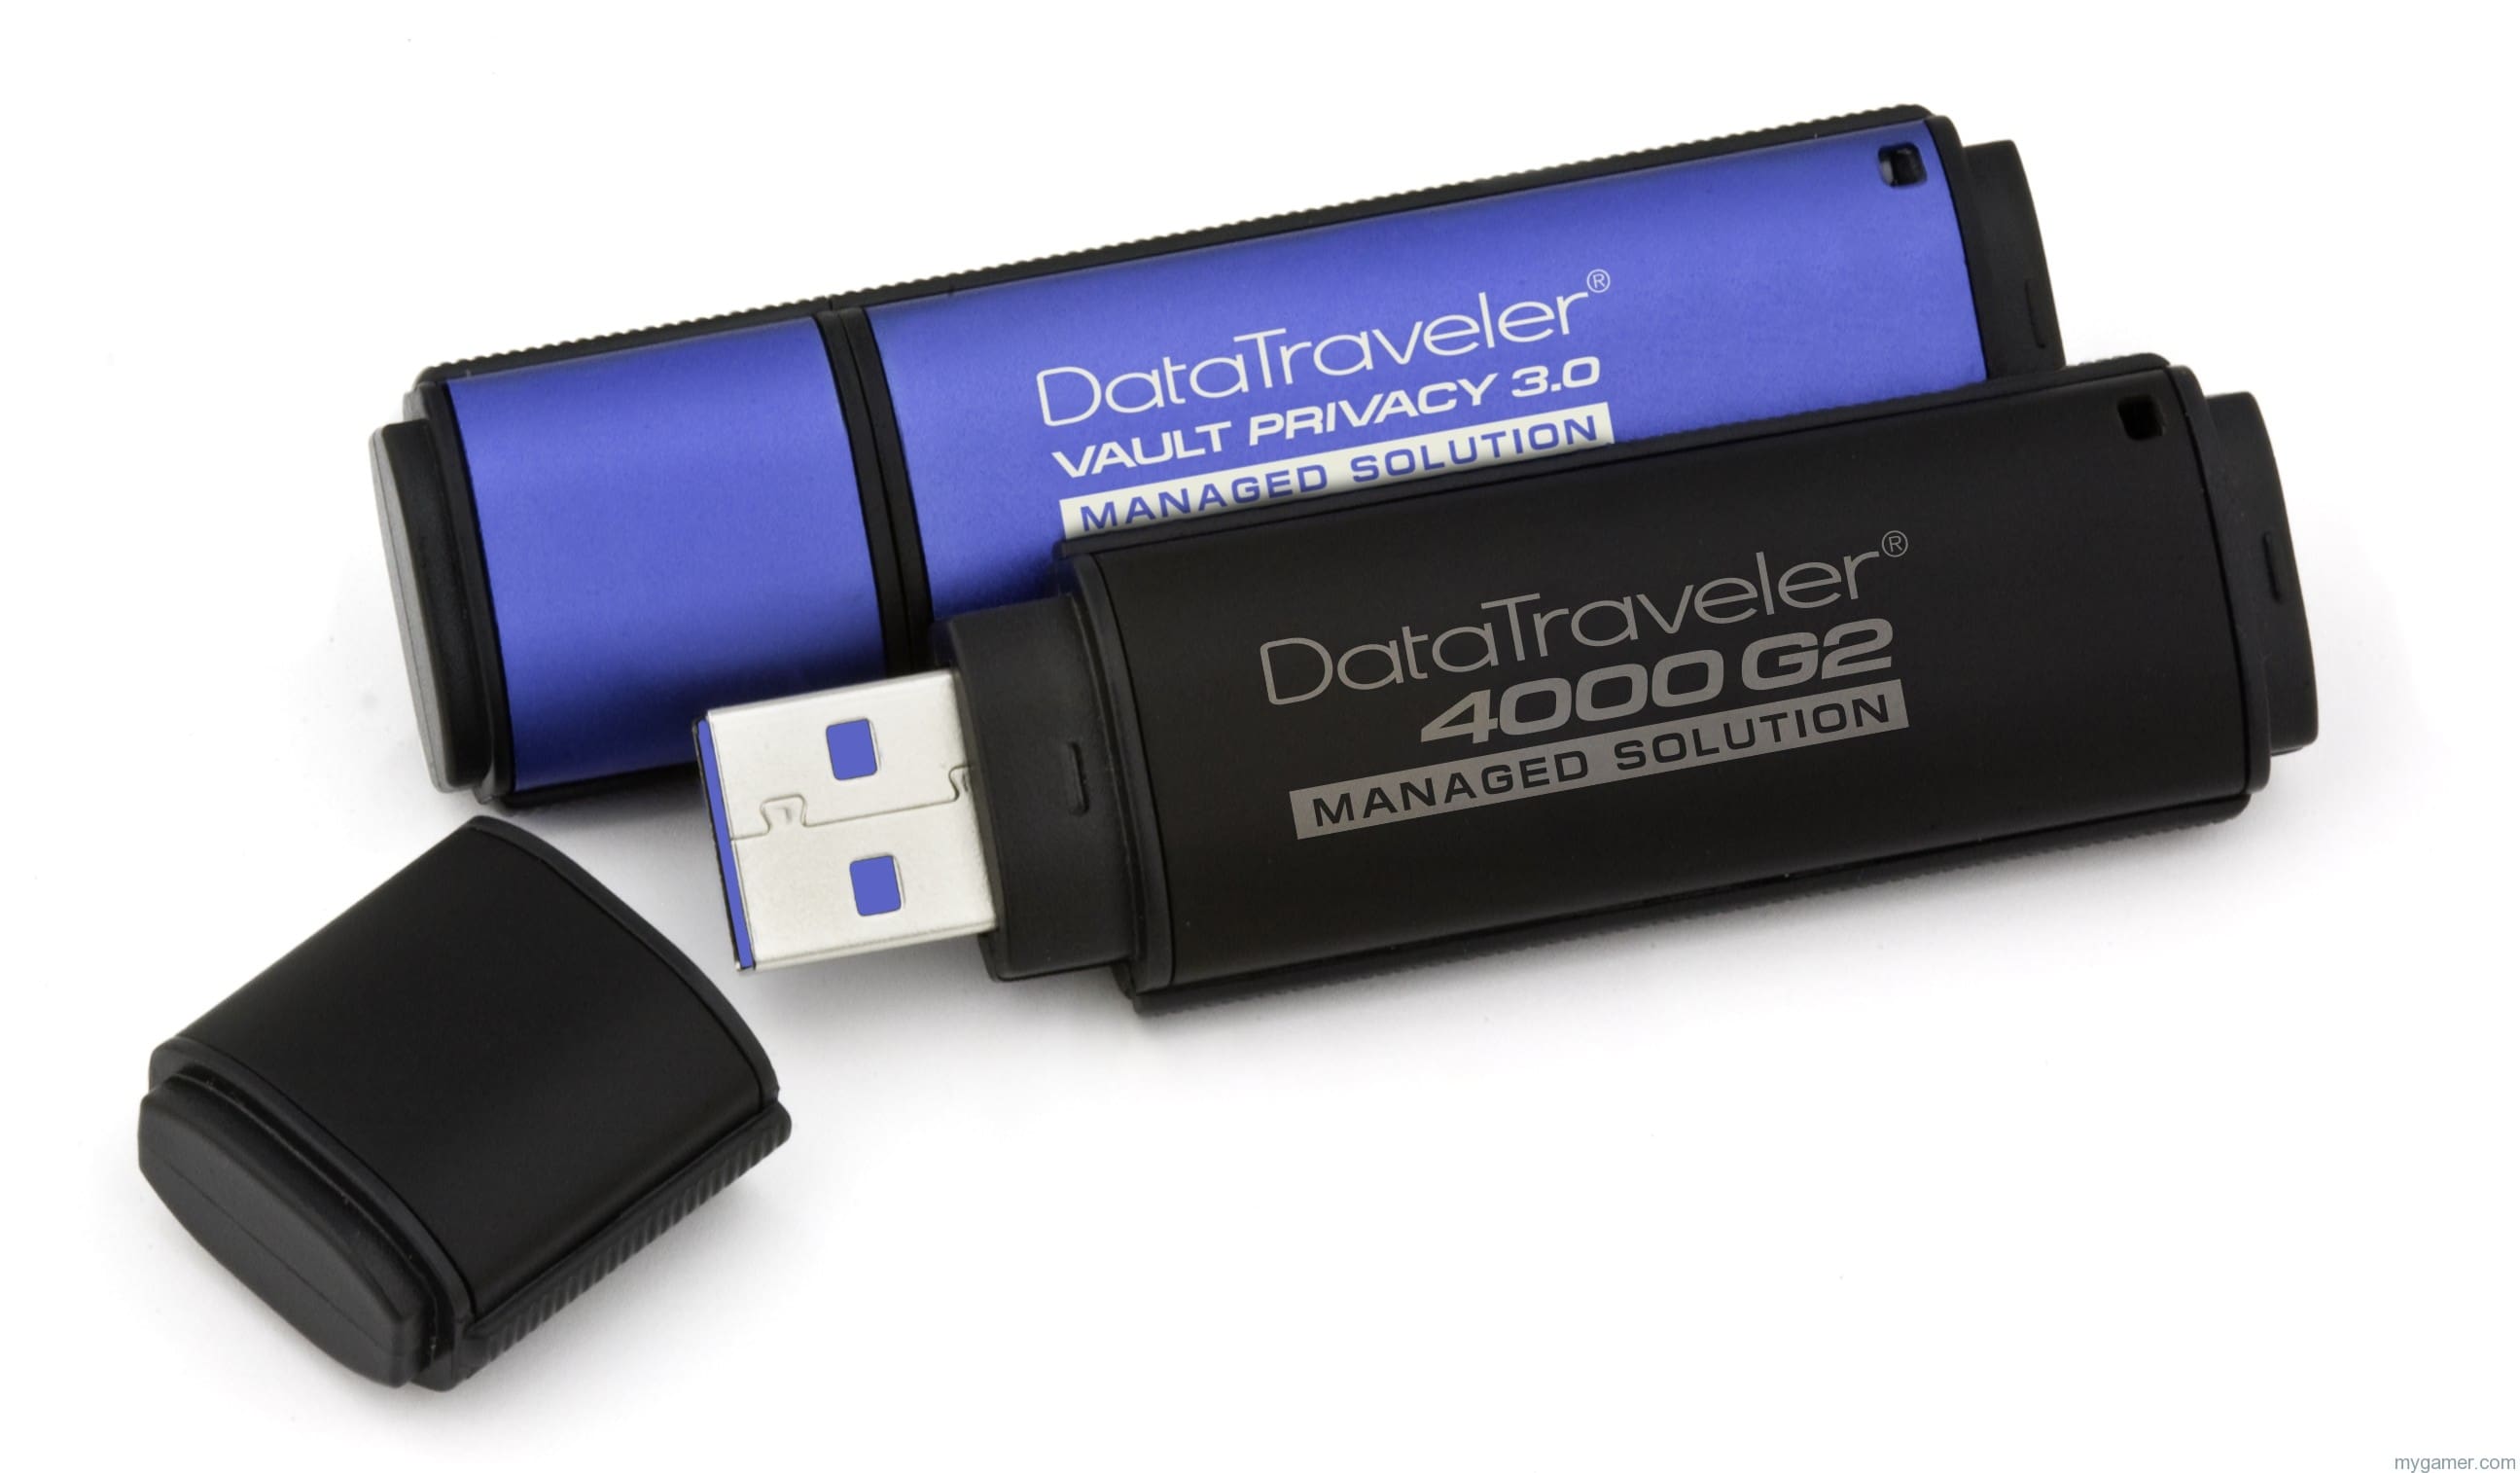 DataTraveler 4000G2 Solution DTVP30DM DT4000G2DM